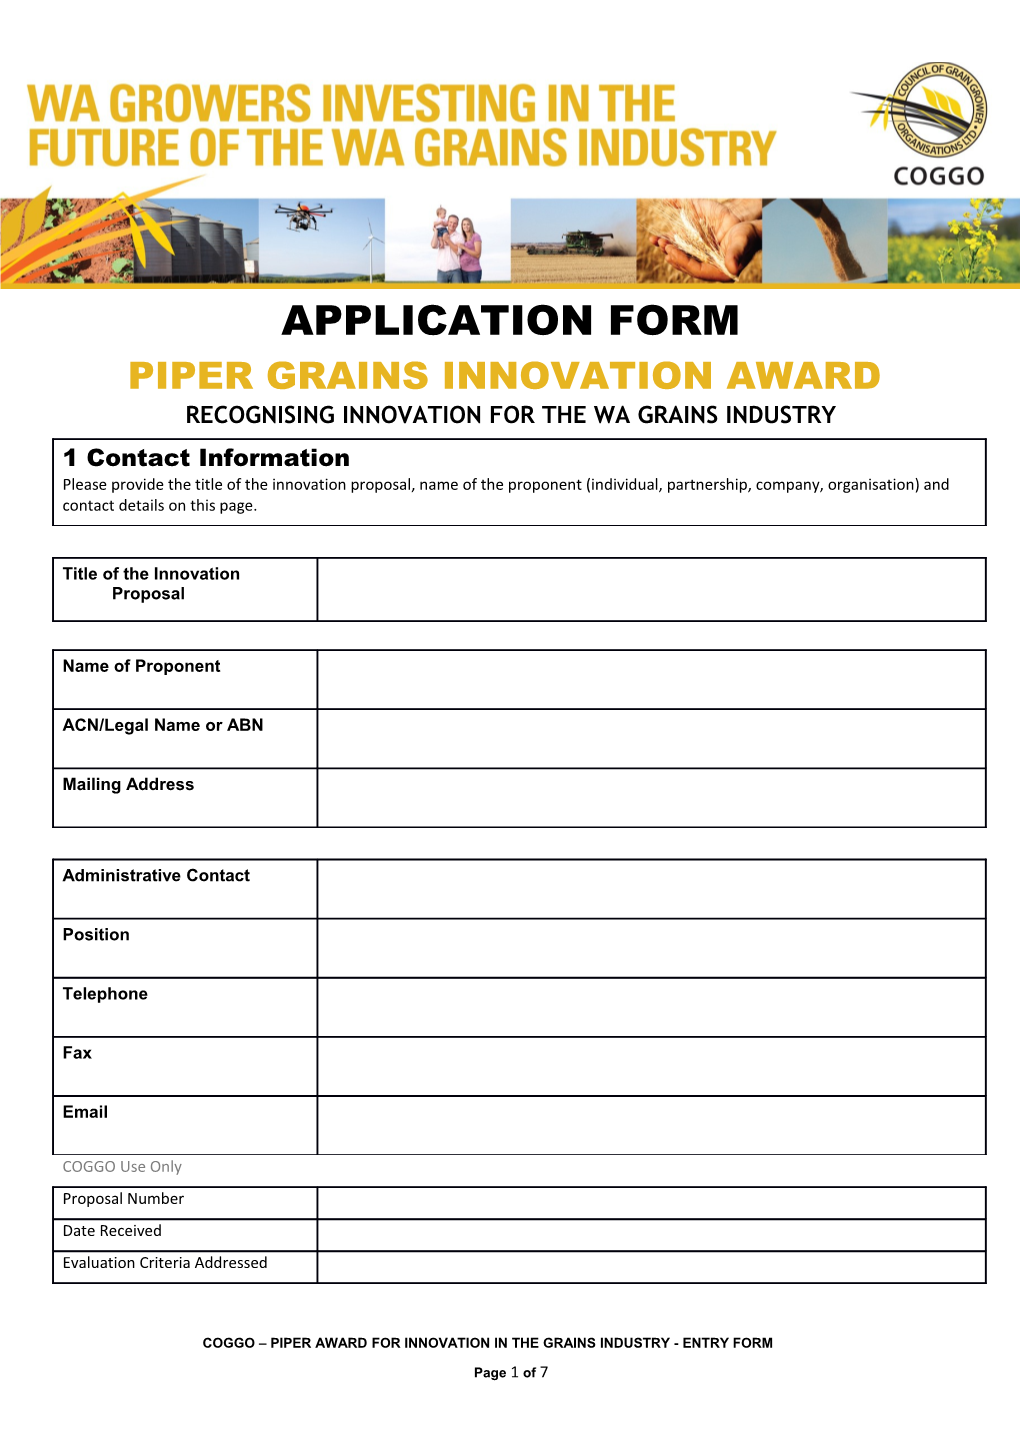 Piper Grains Innovation Award